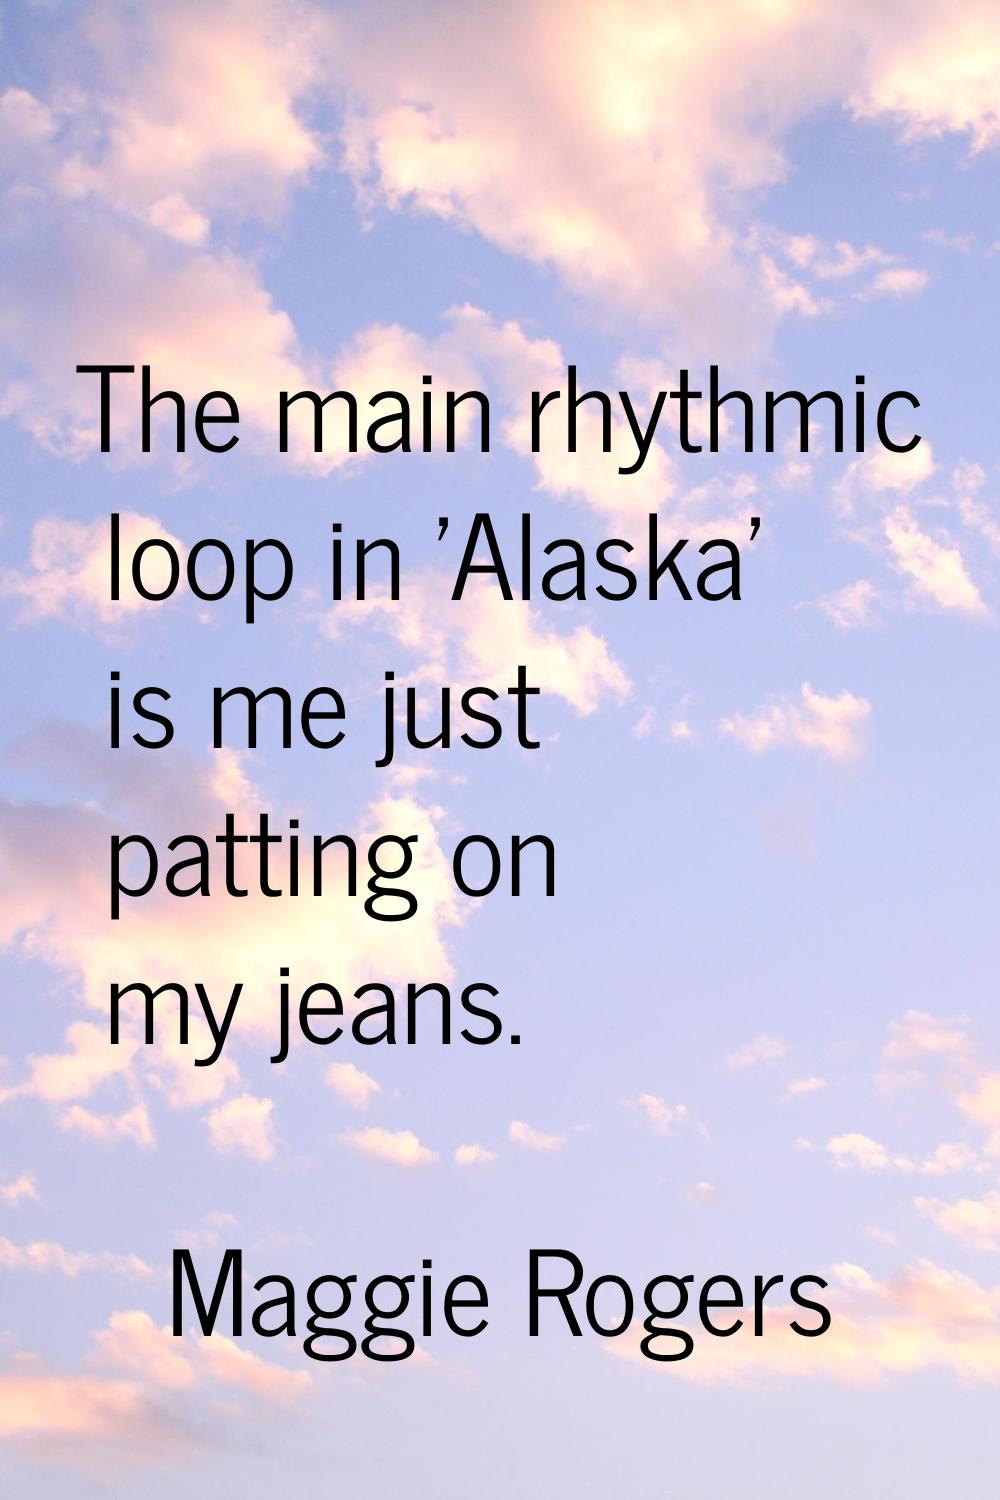 The main rhythmic loop in 'Alaska' is me just patting on my jeans.